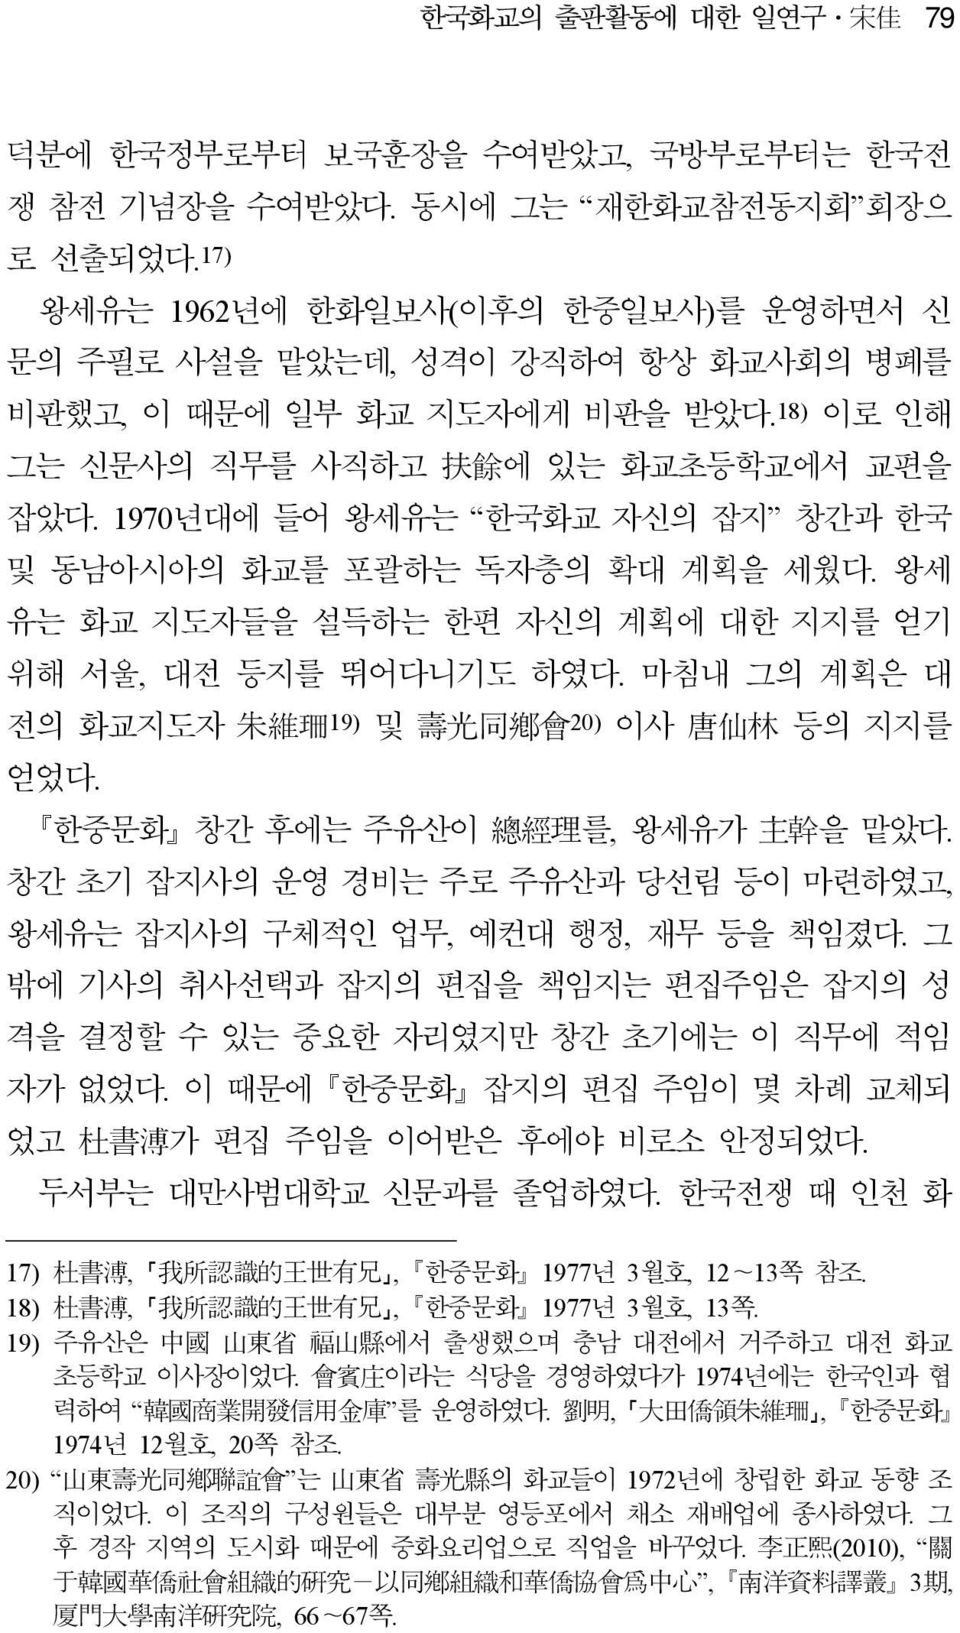 1970년대에 들어 왕세유는 한국화교 자신의 잡지 창간과 한국 및 동남아시아의 화교를 포괄하는 독자층의 확대 계획을 세웠다. 왕세 유는 화교 지도자들을 설득하는 한편 자신의 계획에 대한 지지를 얻기 위해 서울, 대전 등지를 뛰어다니기도 하였다.